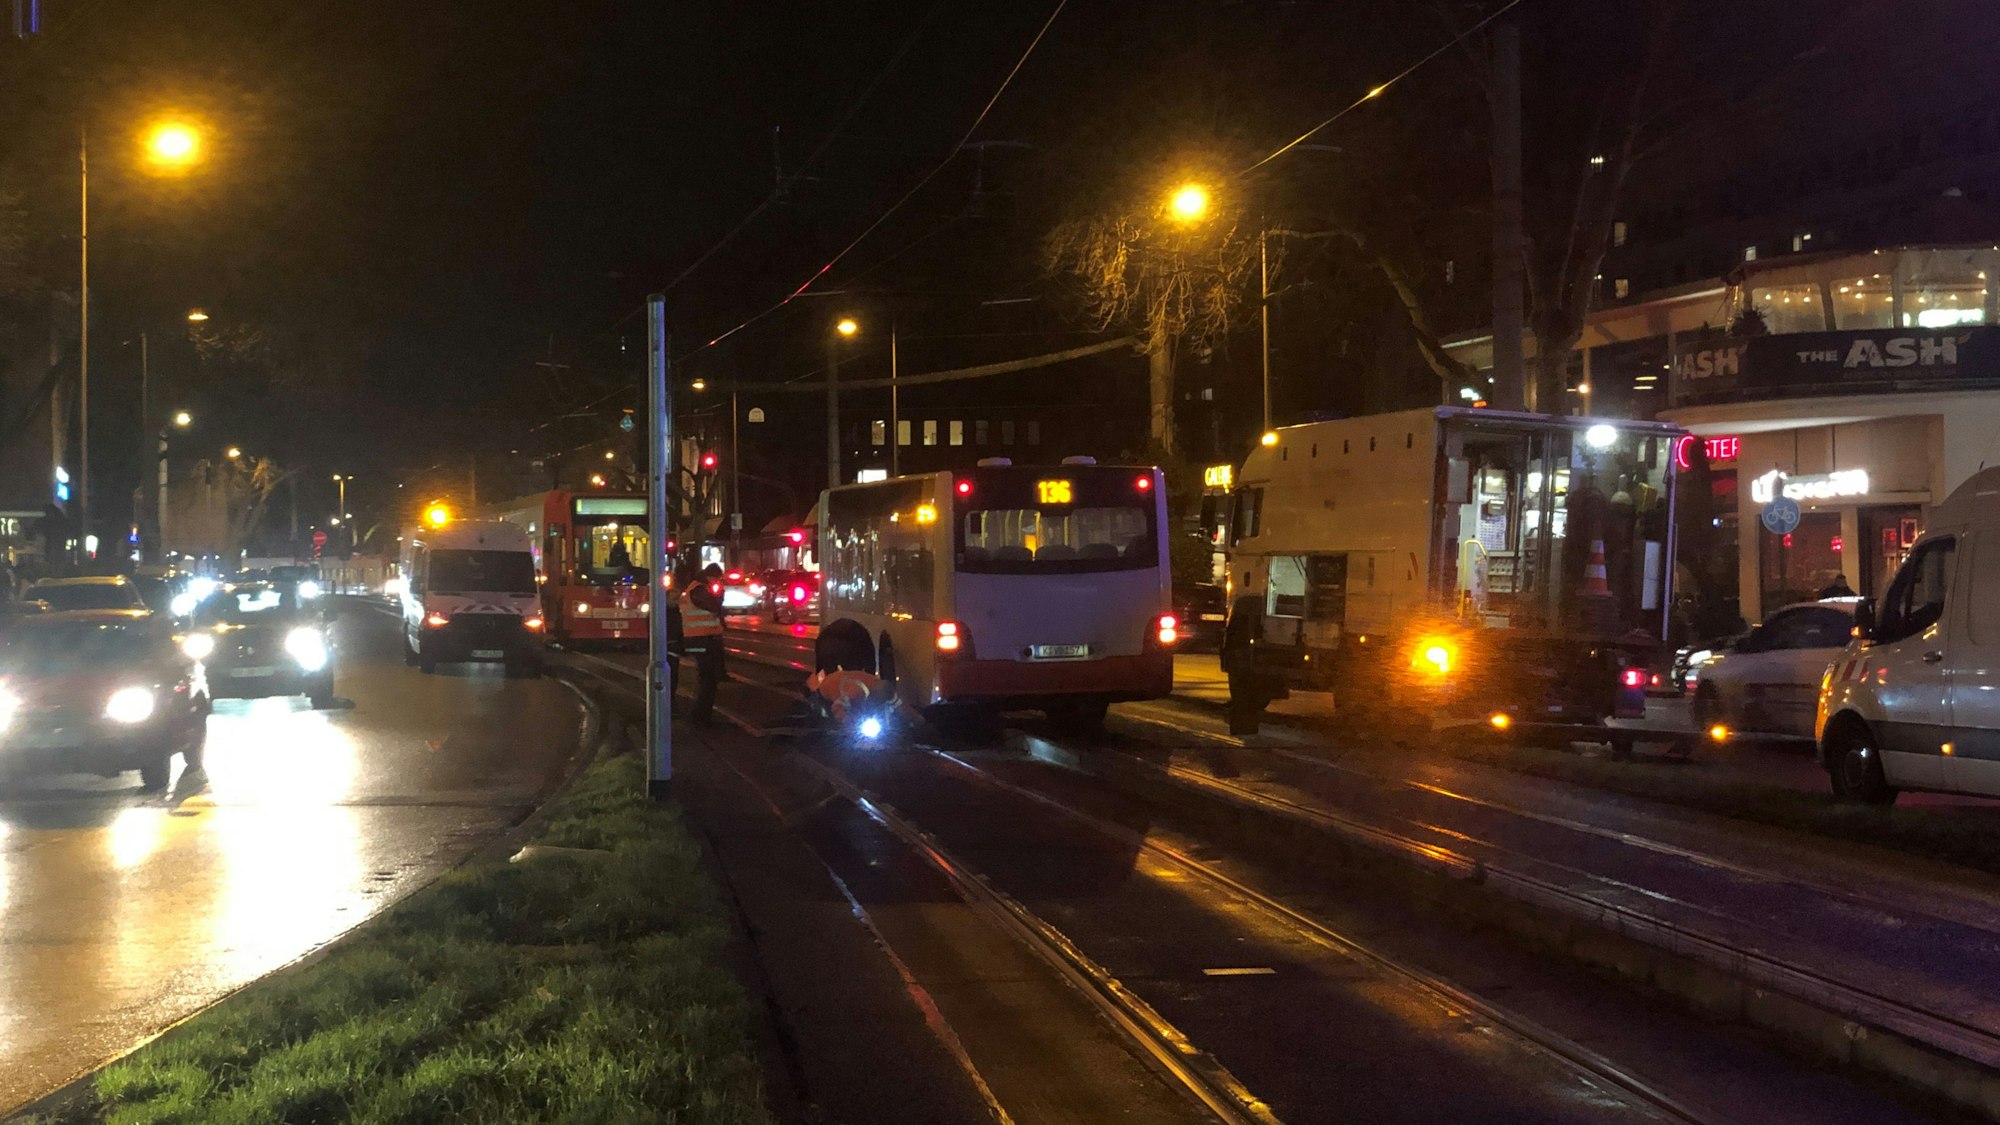 Ein Bus der Linie 136 steht nach einem Verkehrsunfall im Gleisbett.